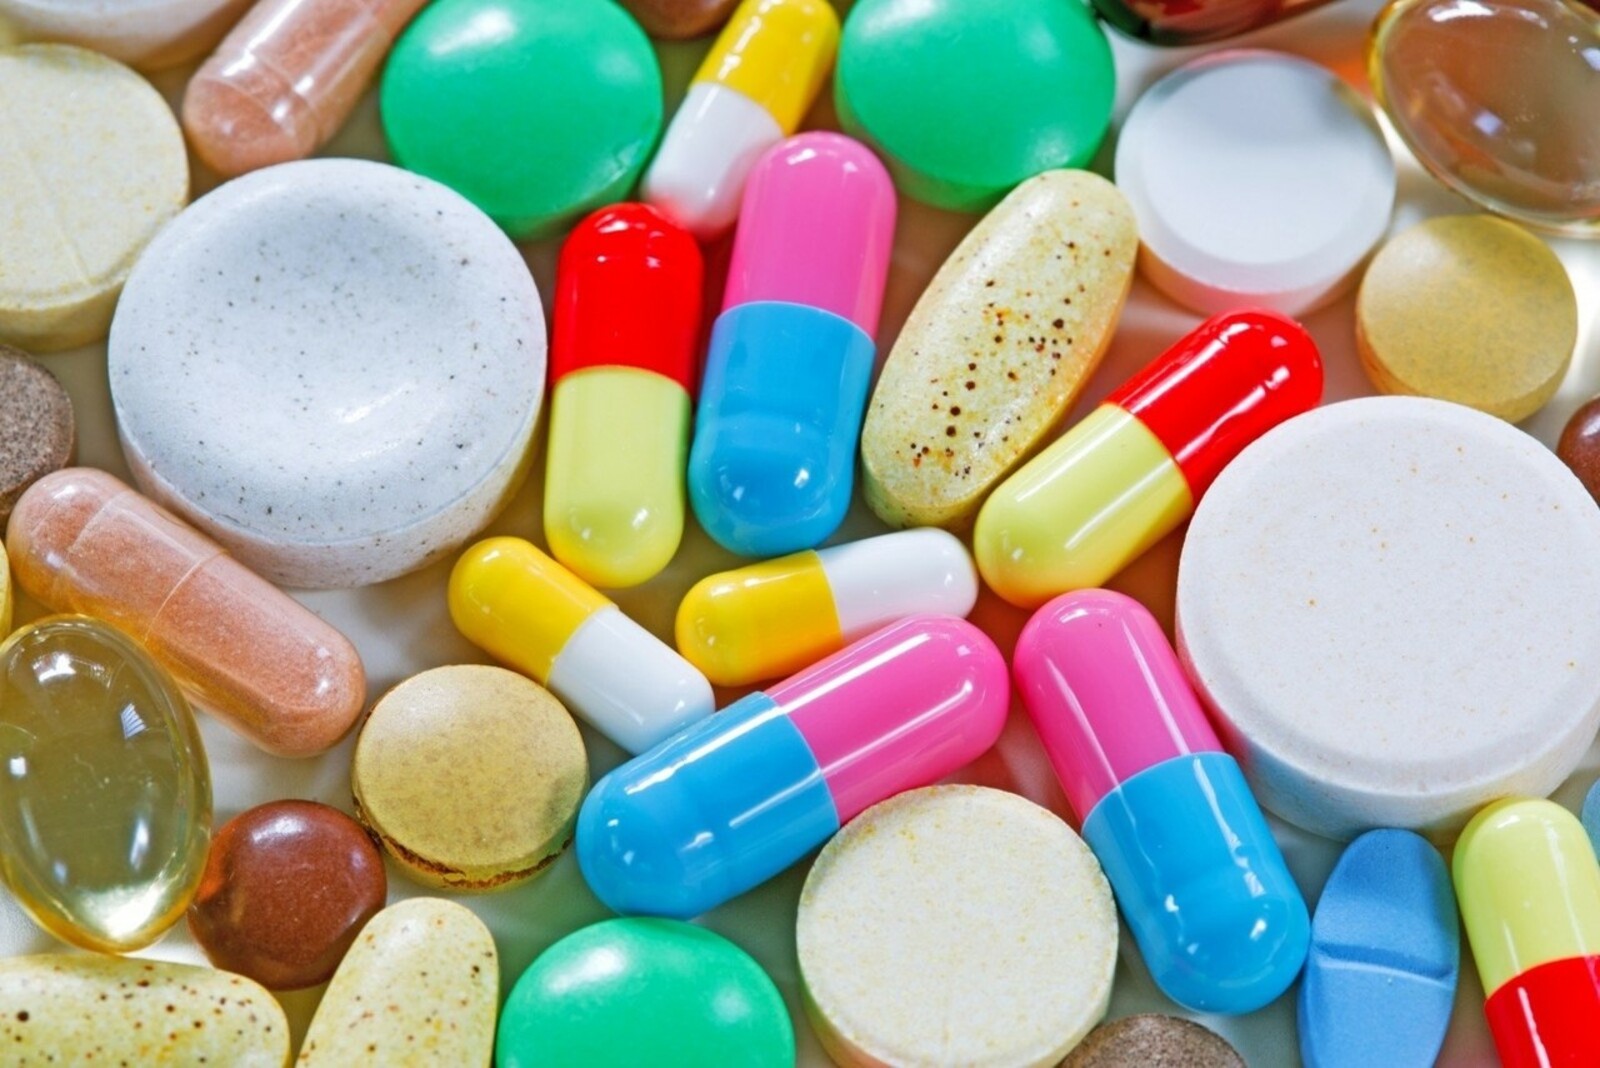 Инфекционист объяснила, чем витамины в таблетках отличаются от натуральных